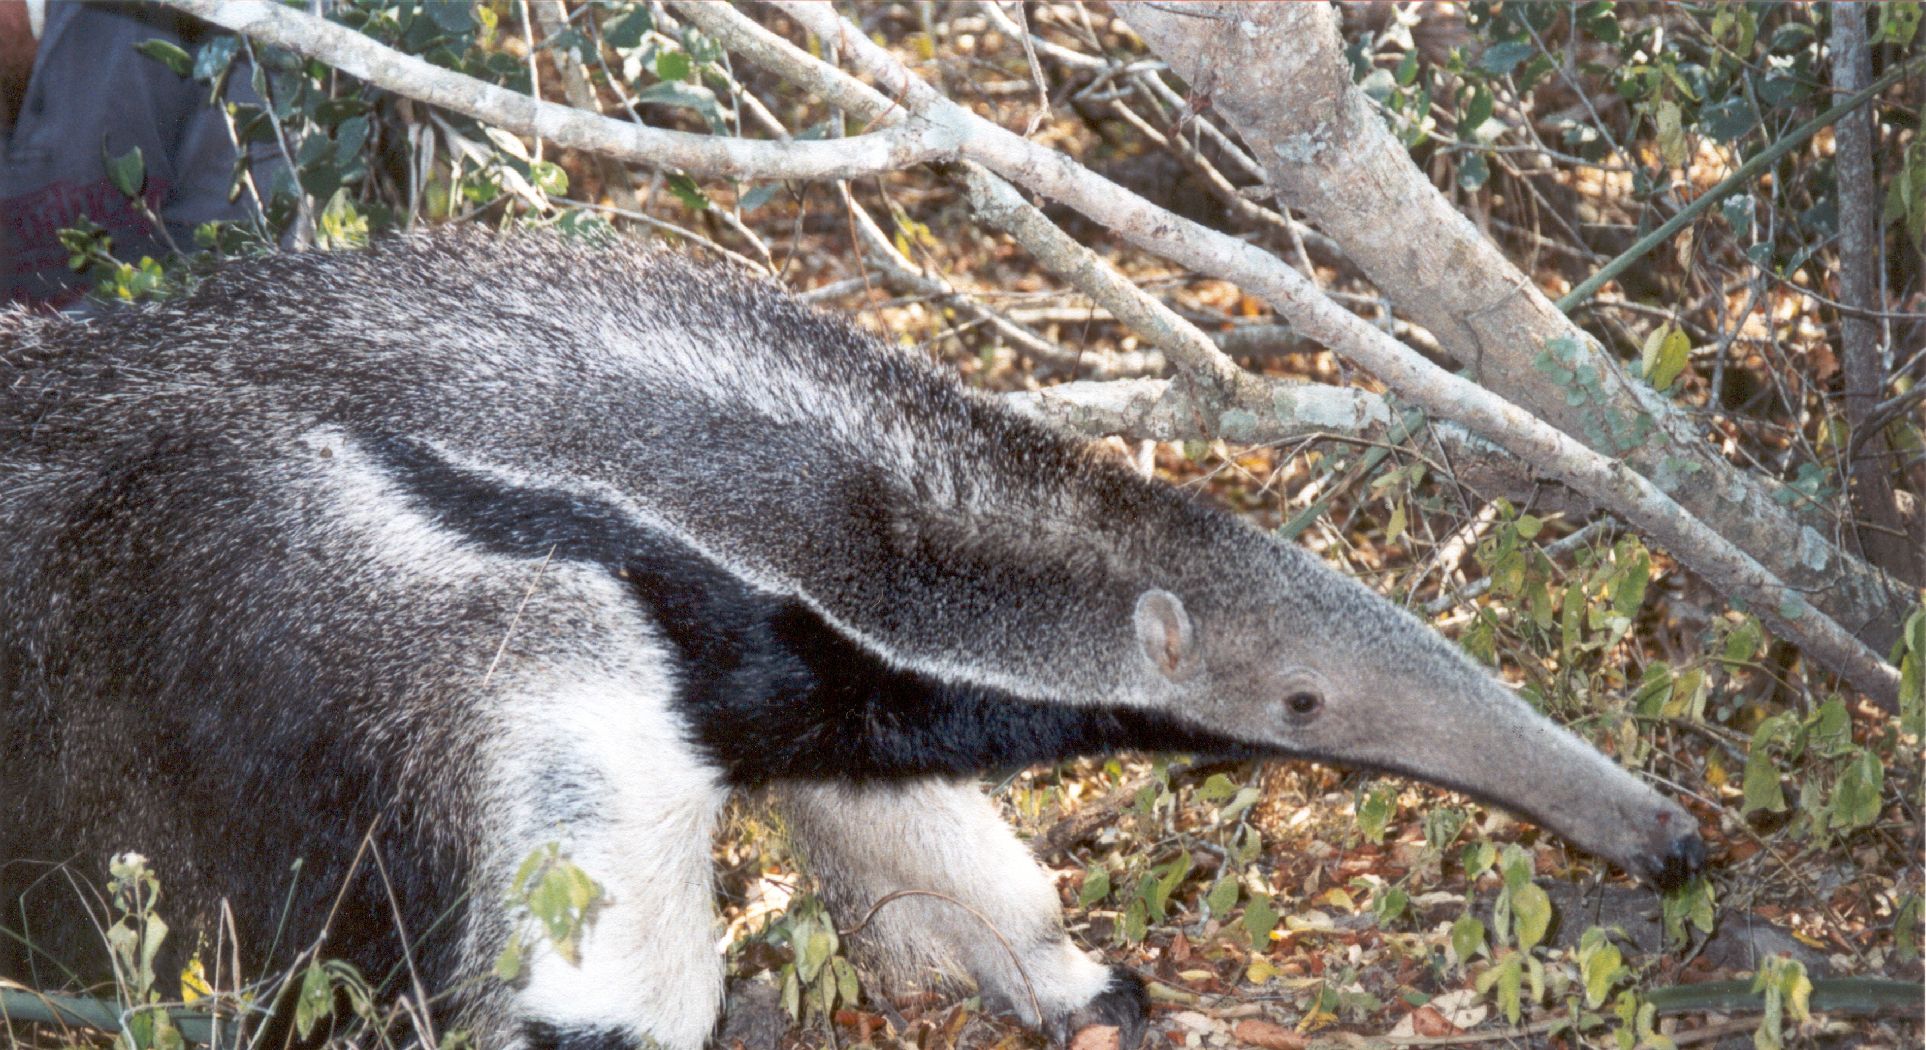 giant anteater eating ants